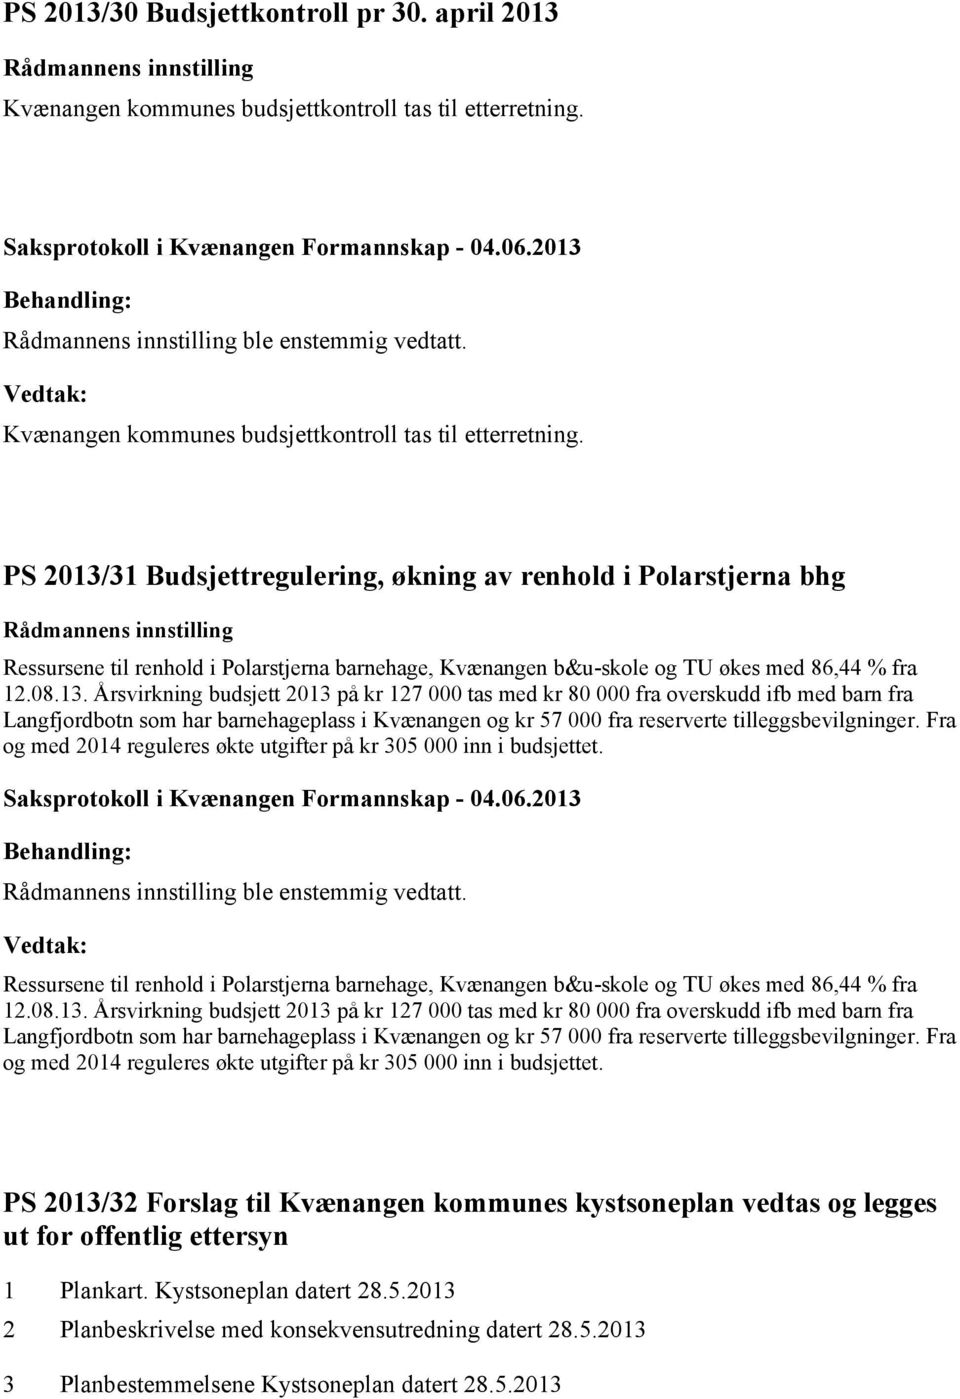 PS 2013/31 Budsjettregulering, økning av renhold i Polarstjerna bhg Ressursene til renhold i Polarstjerna barnehage, Kvænangen b&u-skole og TU økes med 86,44 % fra 12.08.13. Årsvirkning budsjett 2013 på kr 127 000 tas med kr 80 000 fra overskudd ifb med barn fra Langfjordbotn som har barnehageplass i Kvænangen og kr 57 000 fra reserverte tilleggsbevilgninger.